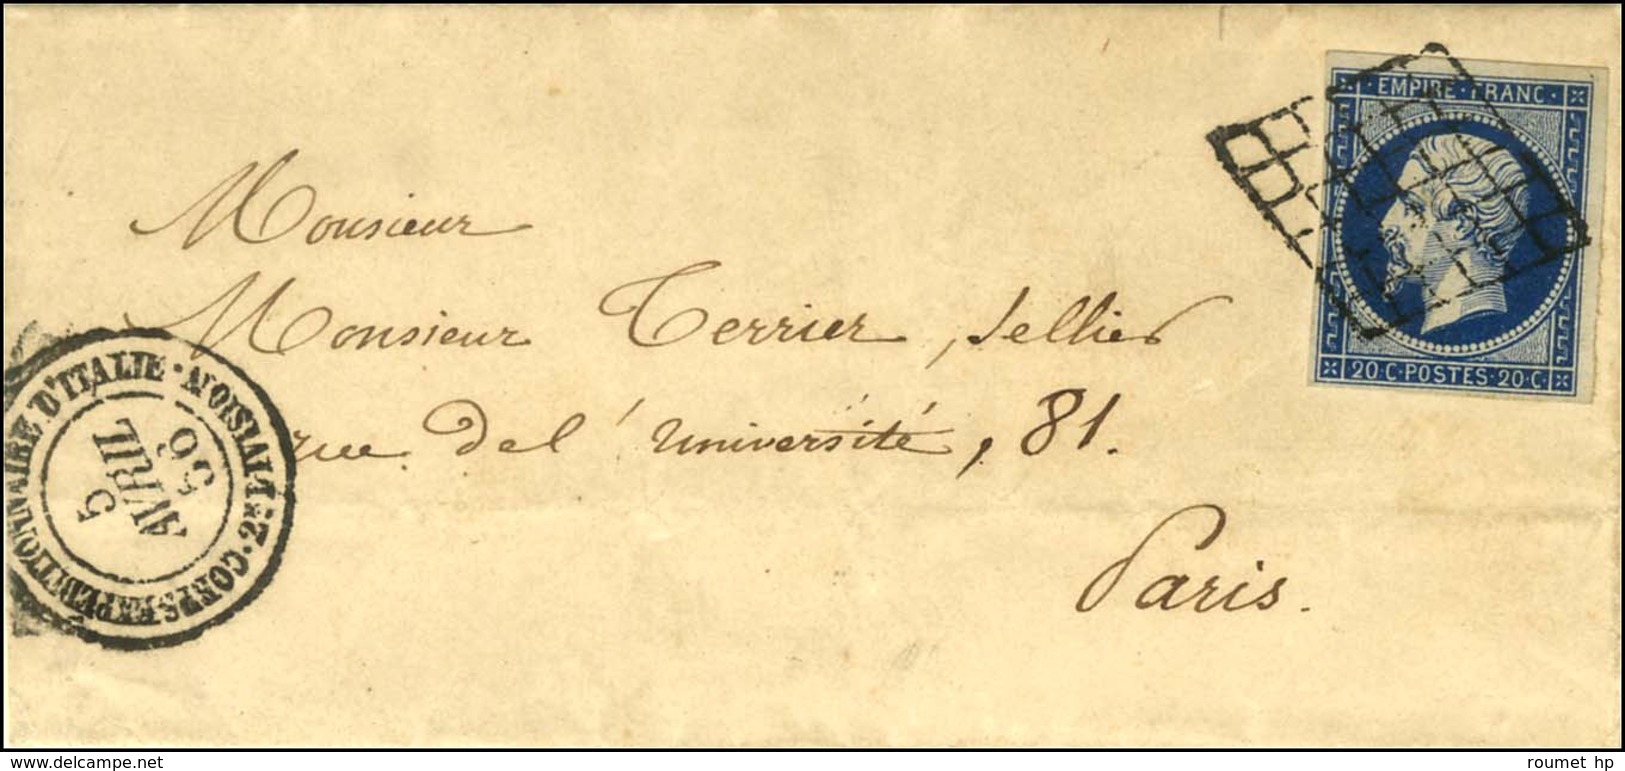 Grille / N° 14 Càd CORPS EXPEDITIONNAIRE D'ITALIE / 2e DIVISION Sur Lettre Avec Texte Daté De Rome Pour Paris. 1856. - S - Army Postmarks (before 1900)